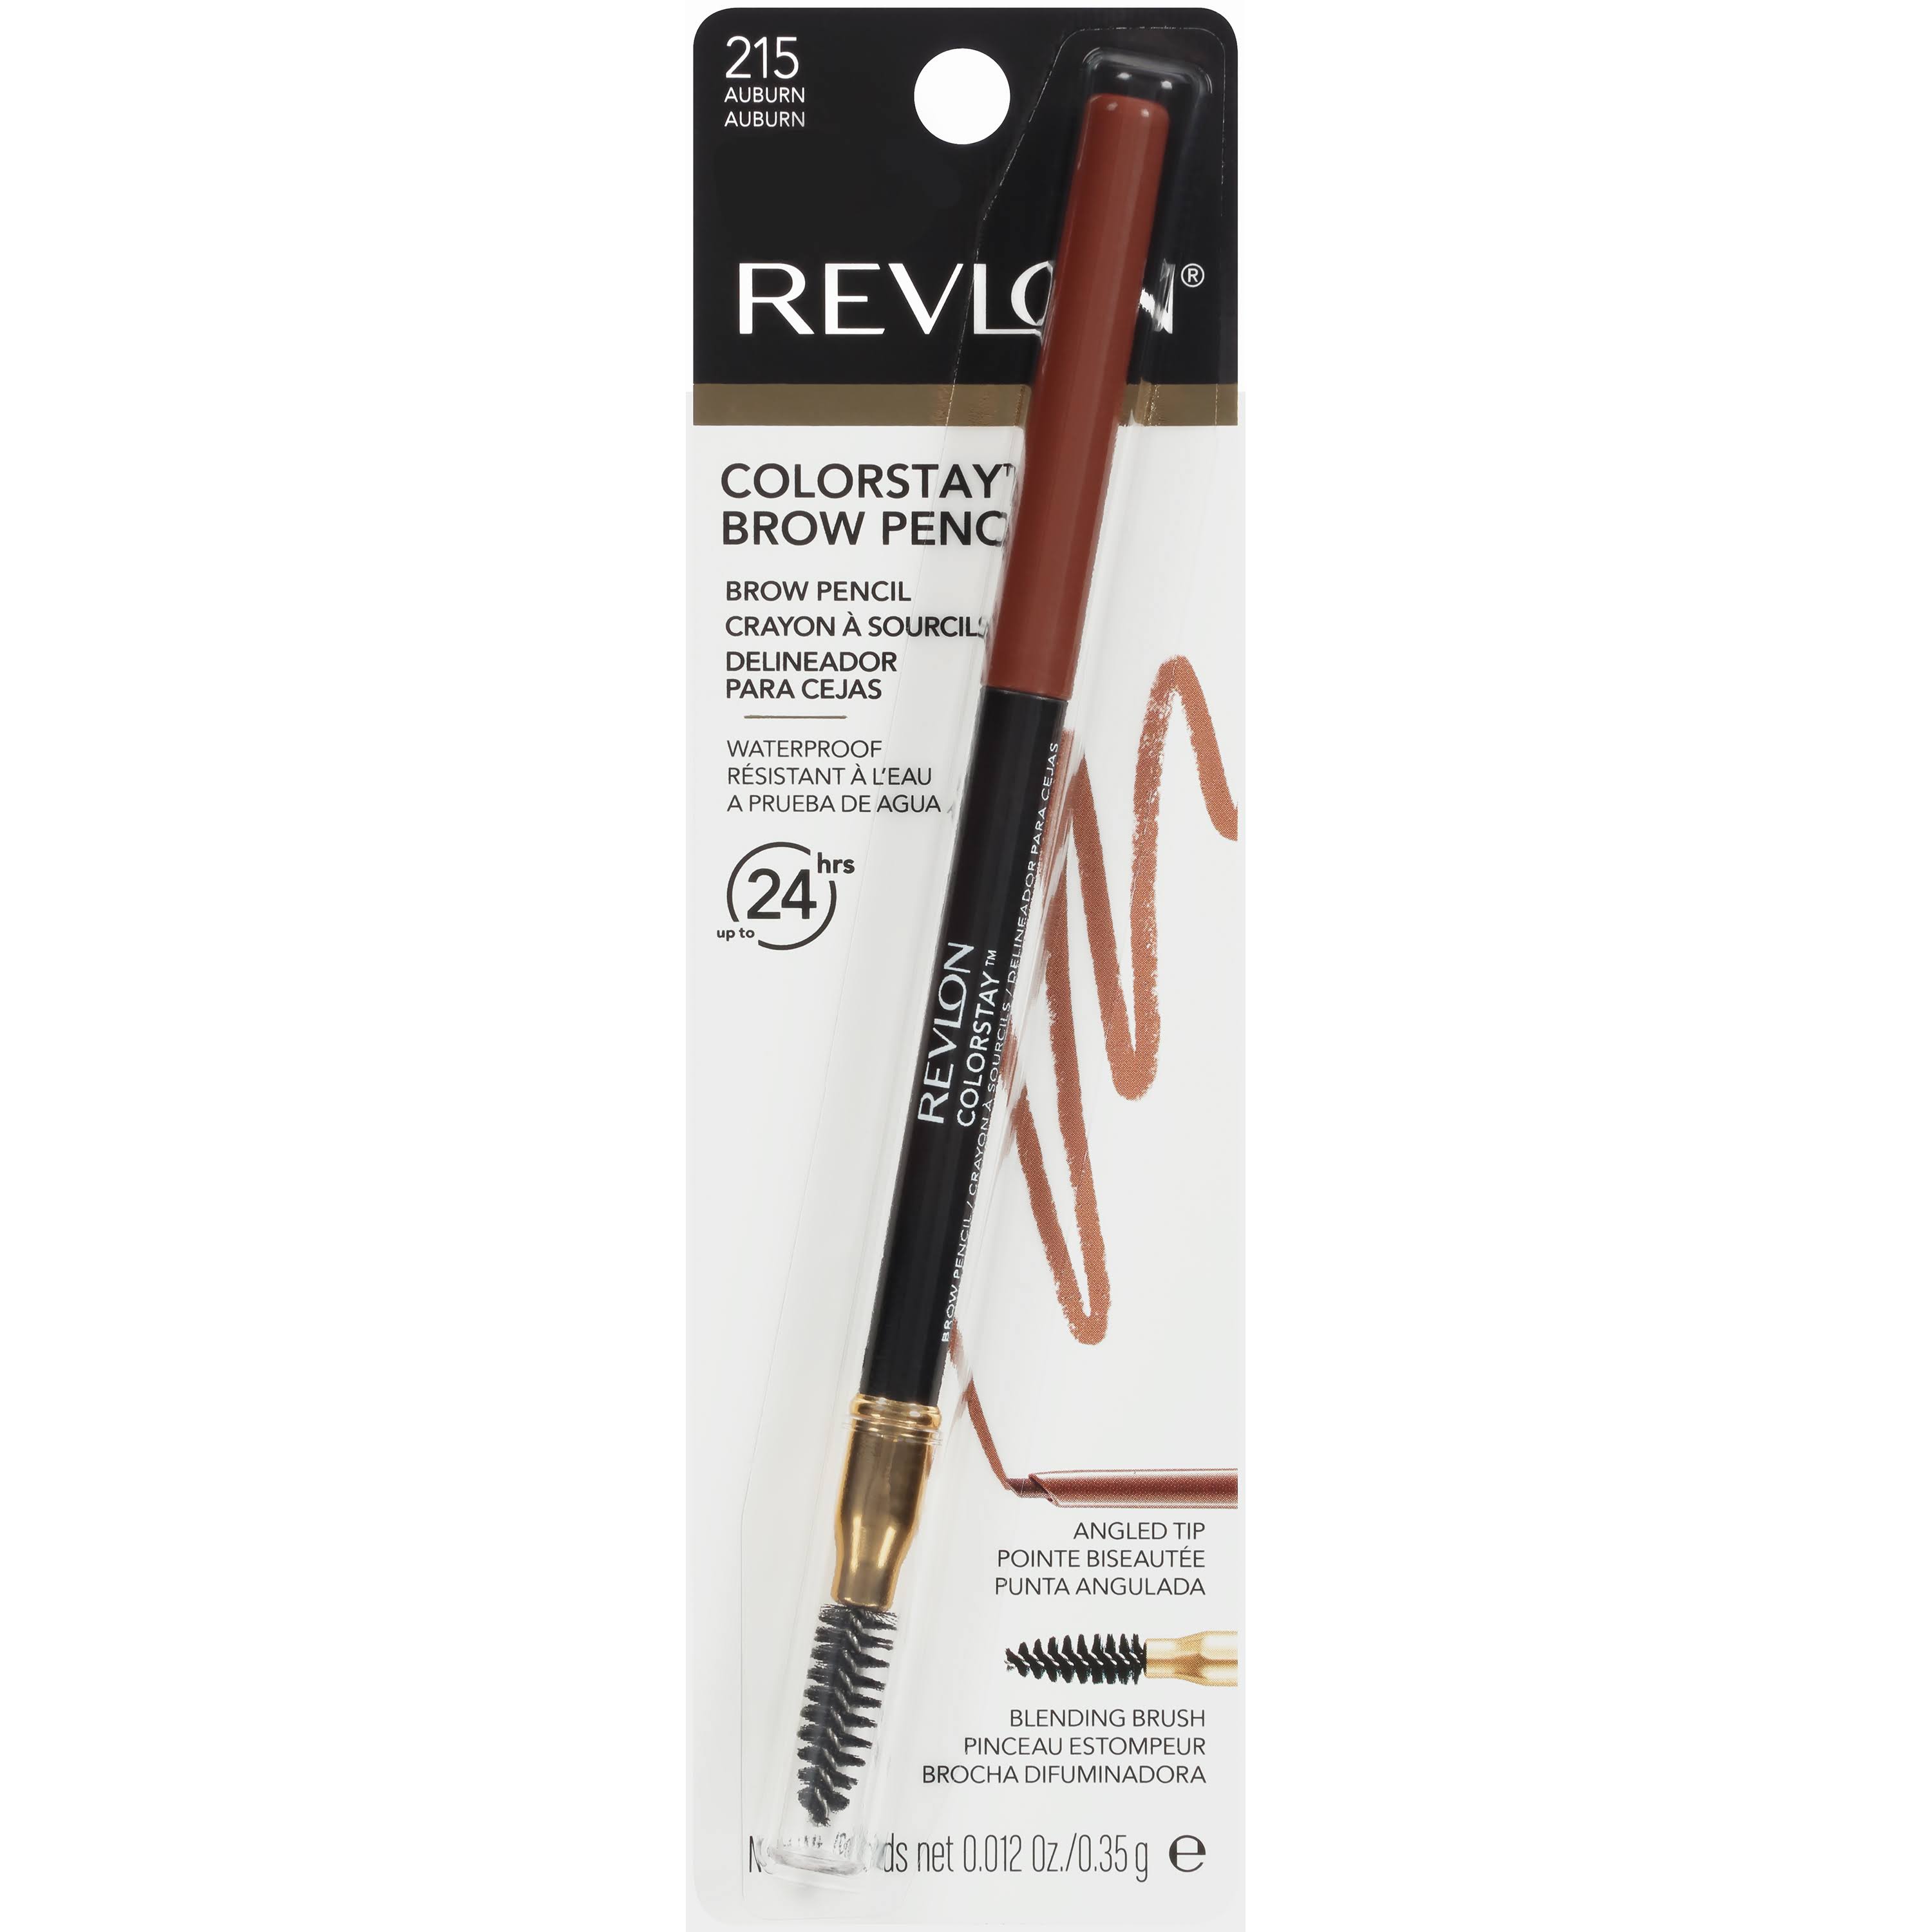 Revlon Color Stay Brow Pencil 215 - Auburn .012oz